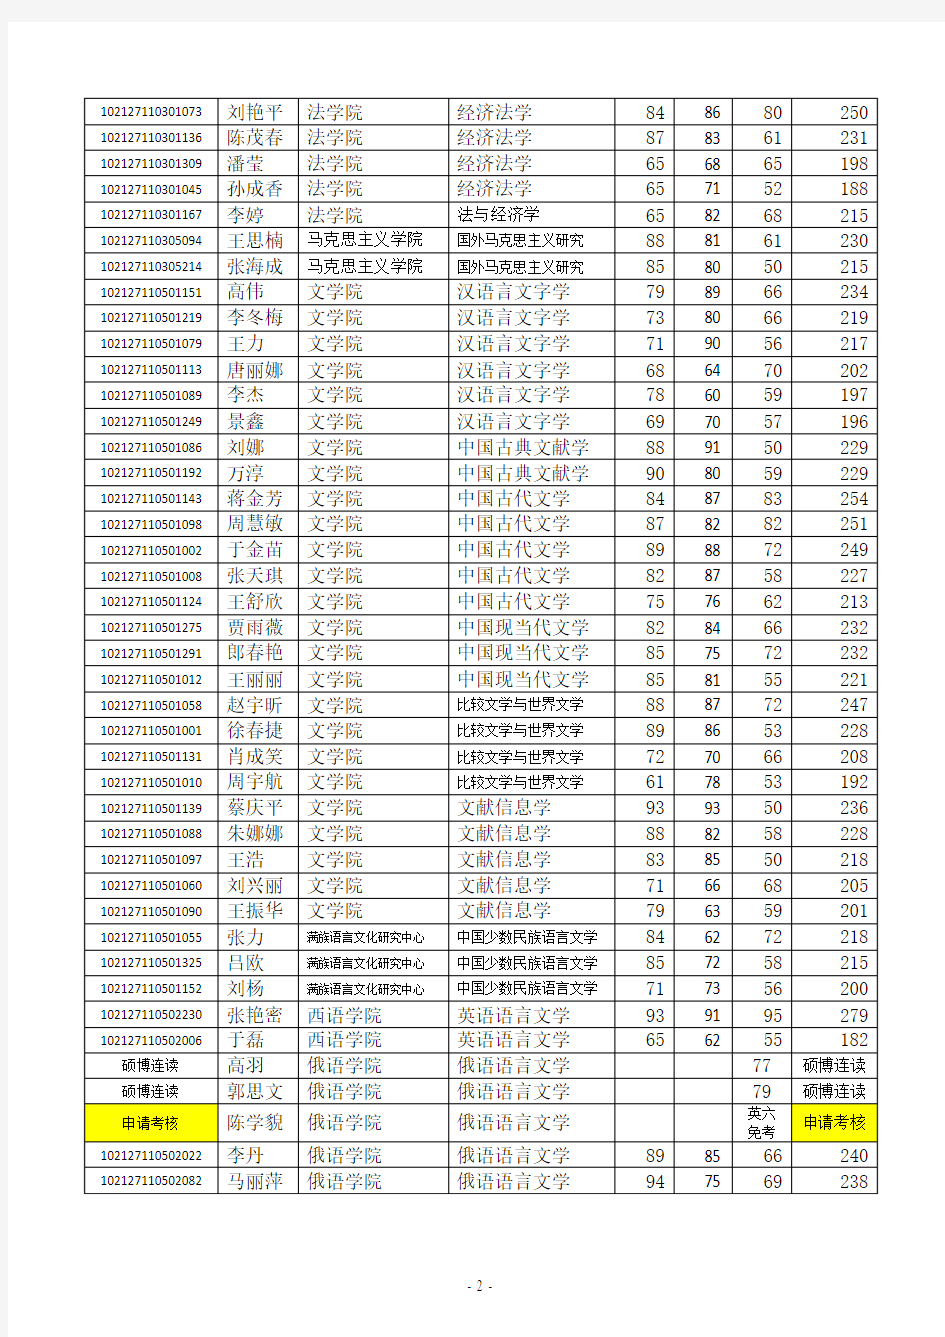 黑龙江大学2017年博士招生复试考生名单及成绩